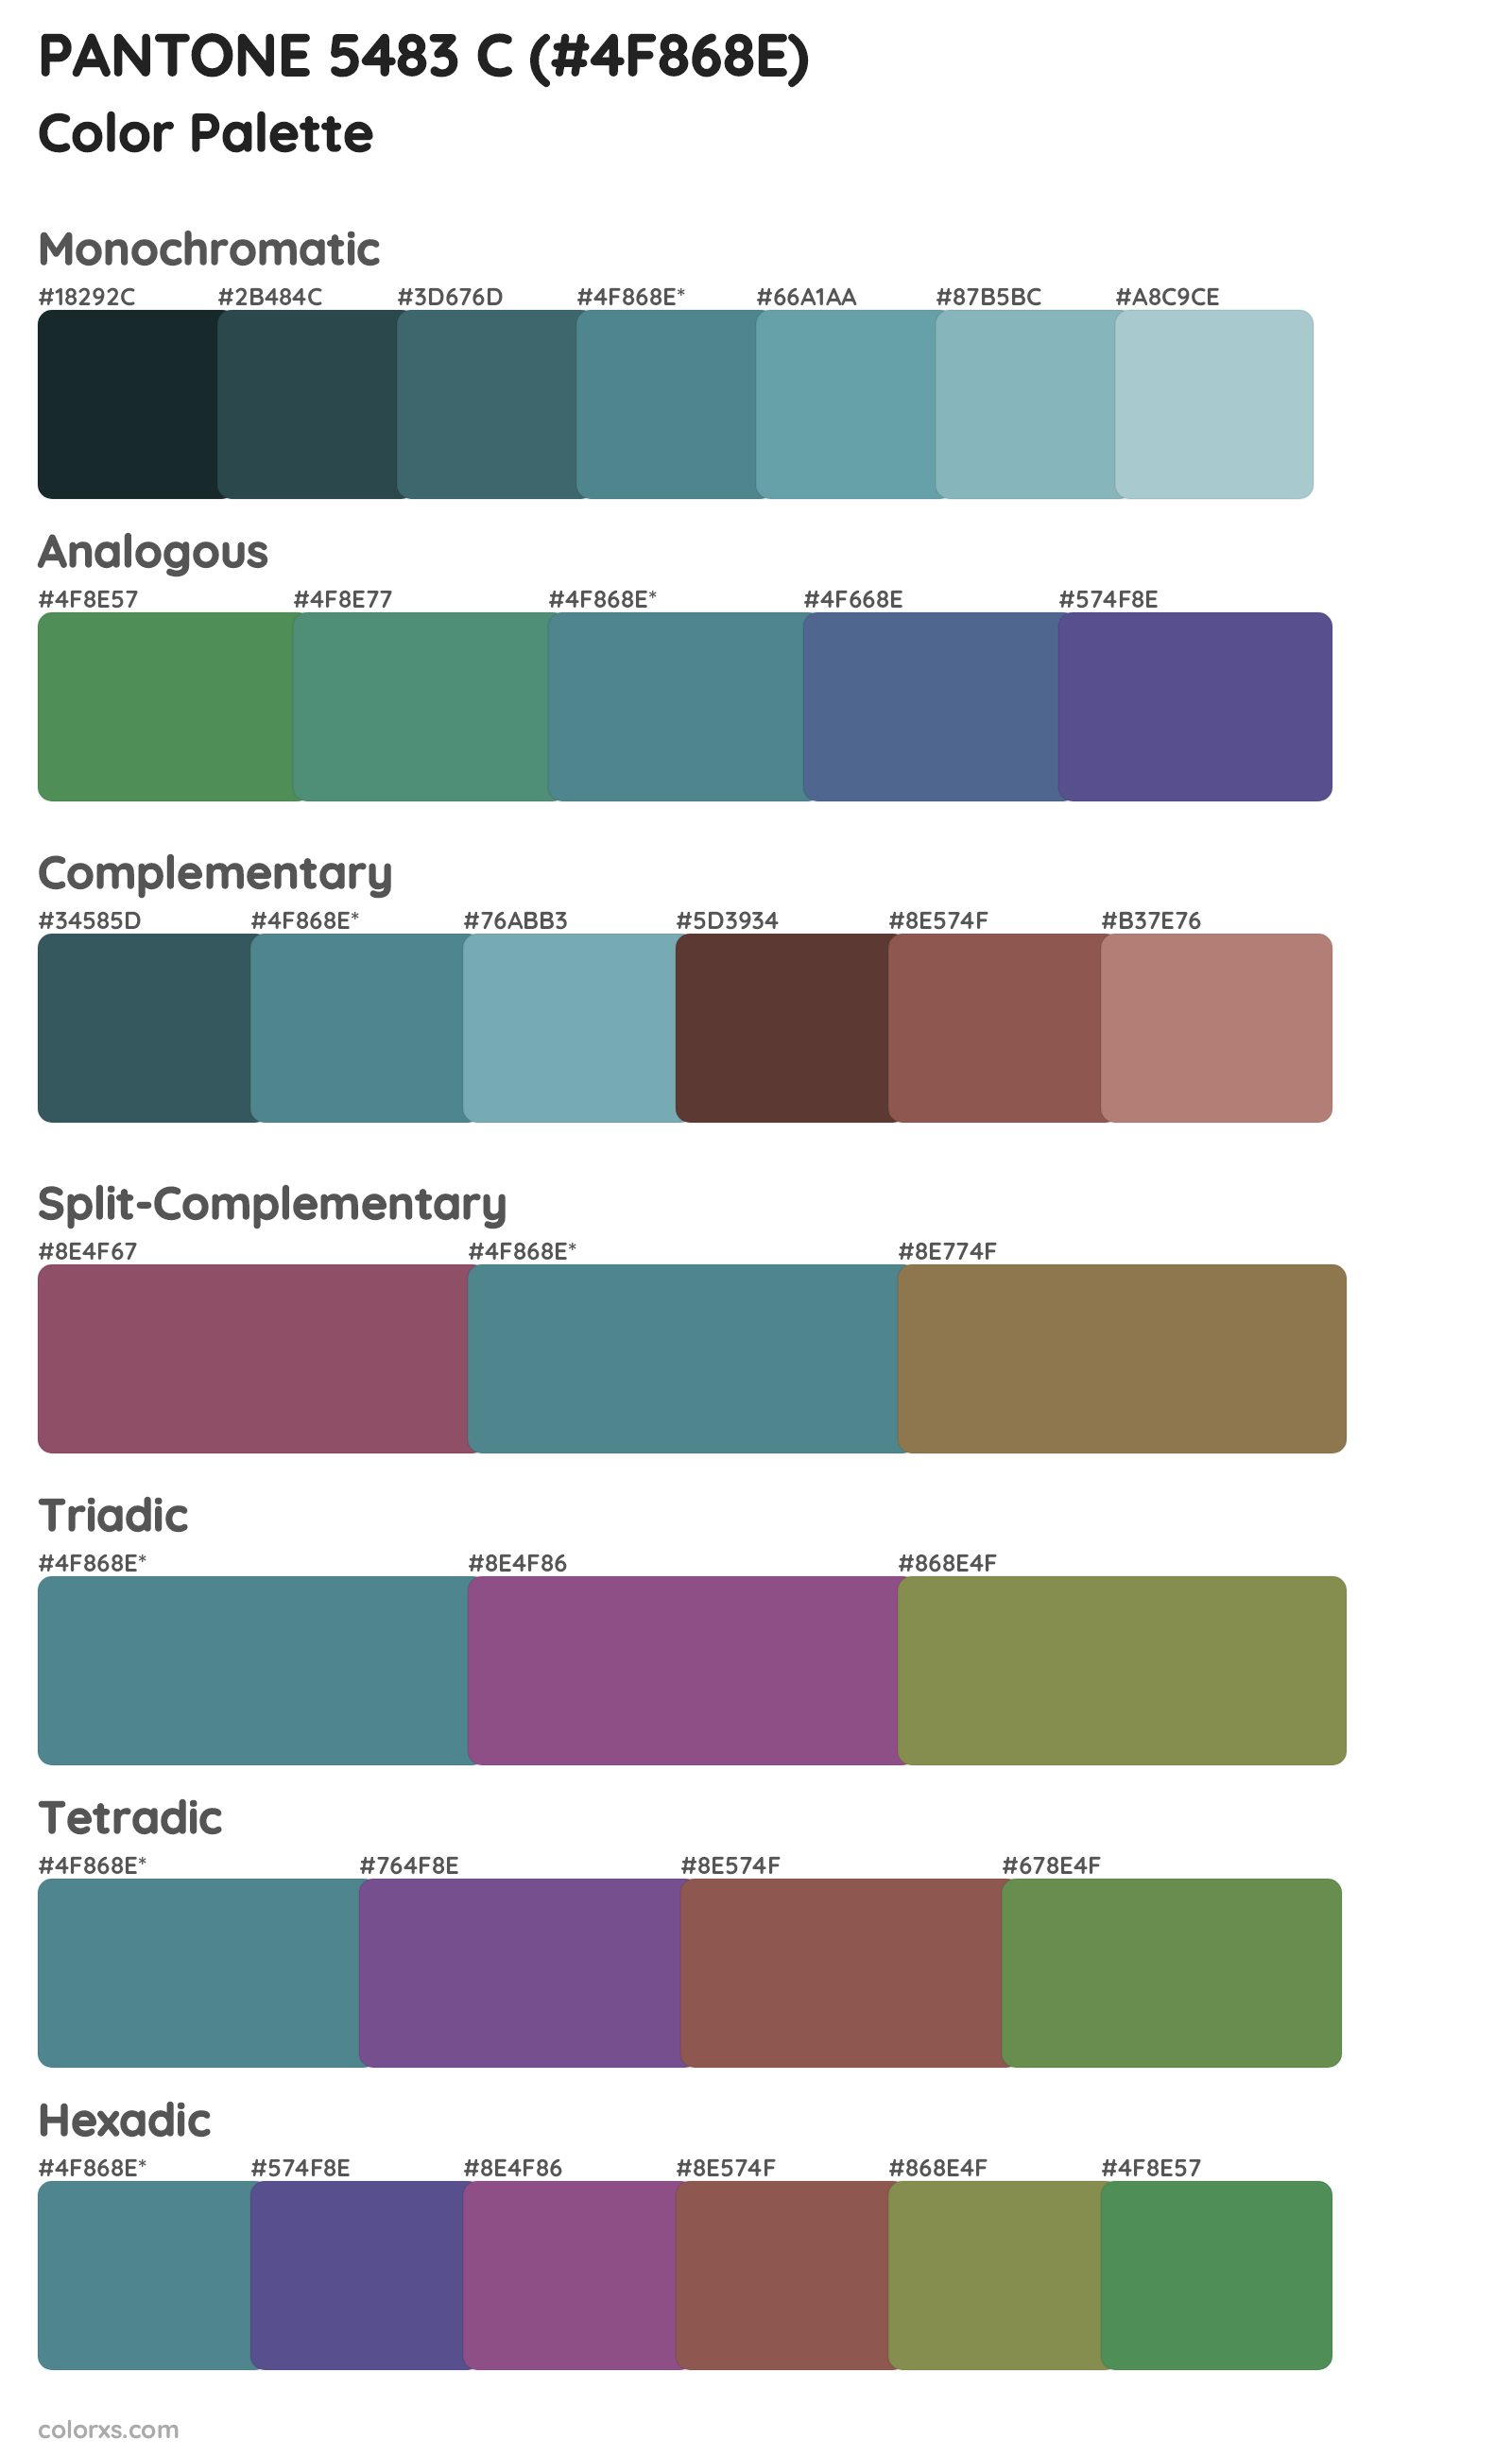 PANTONE 5483 C Color Scheme Palettes